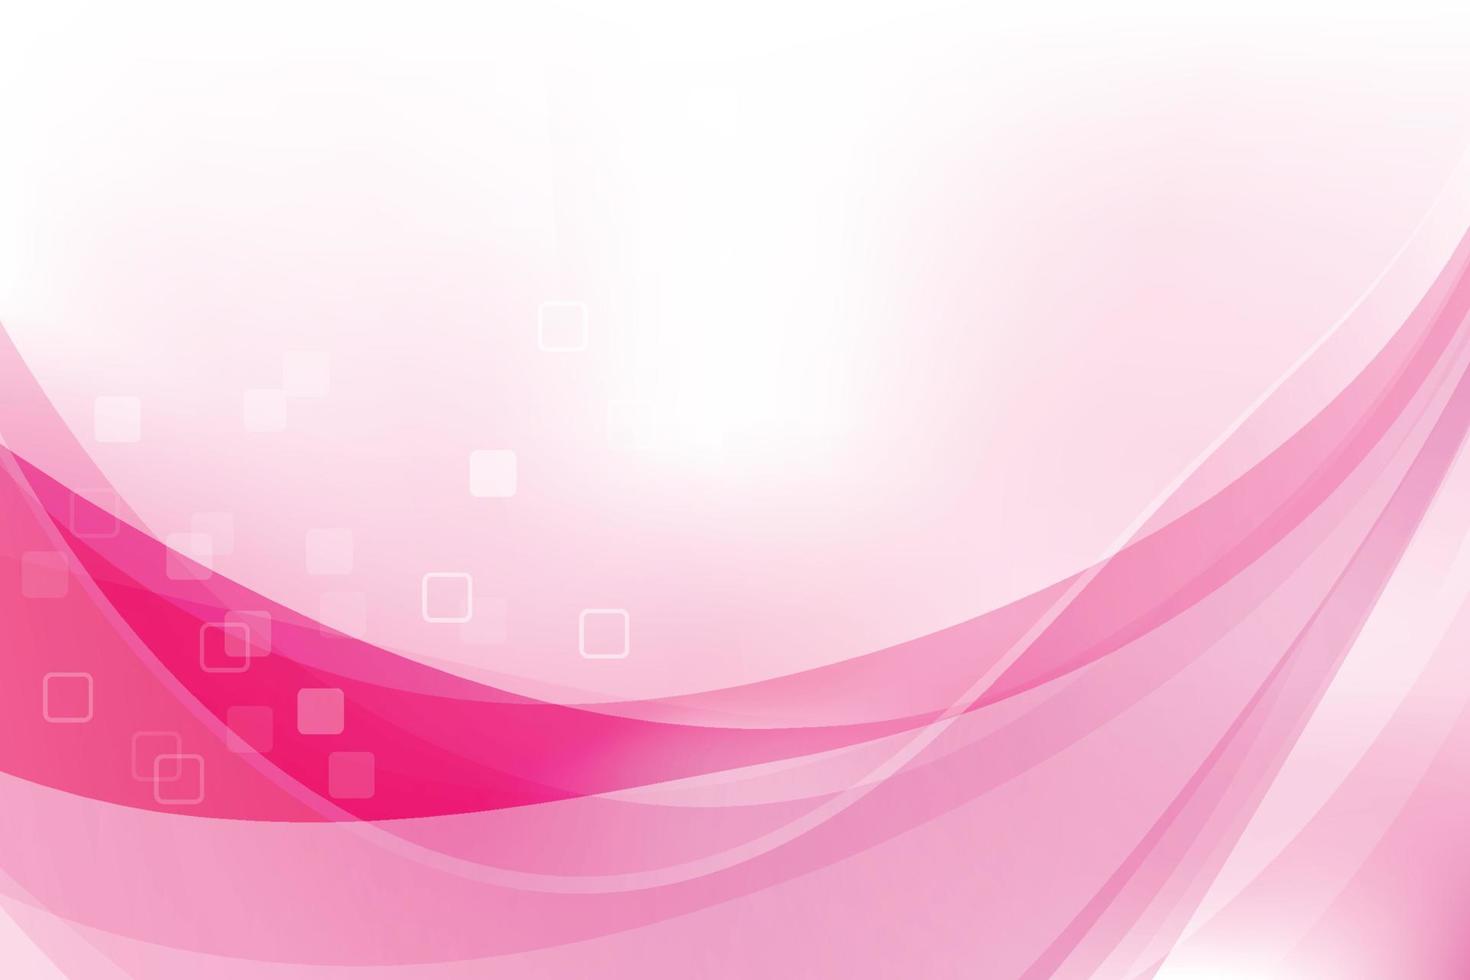 curva de fondo abstracto y mezcla rosa claro 001 vector